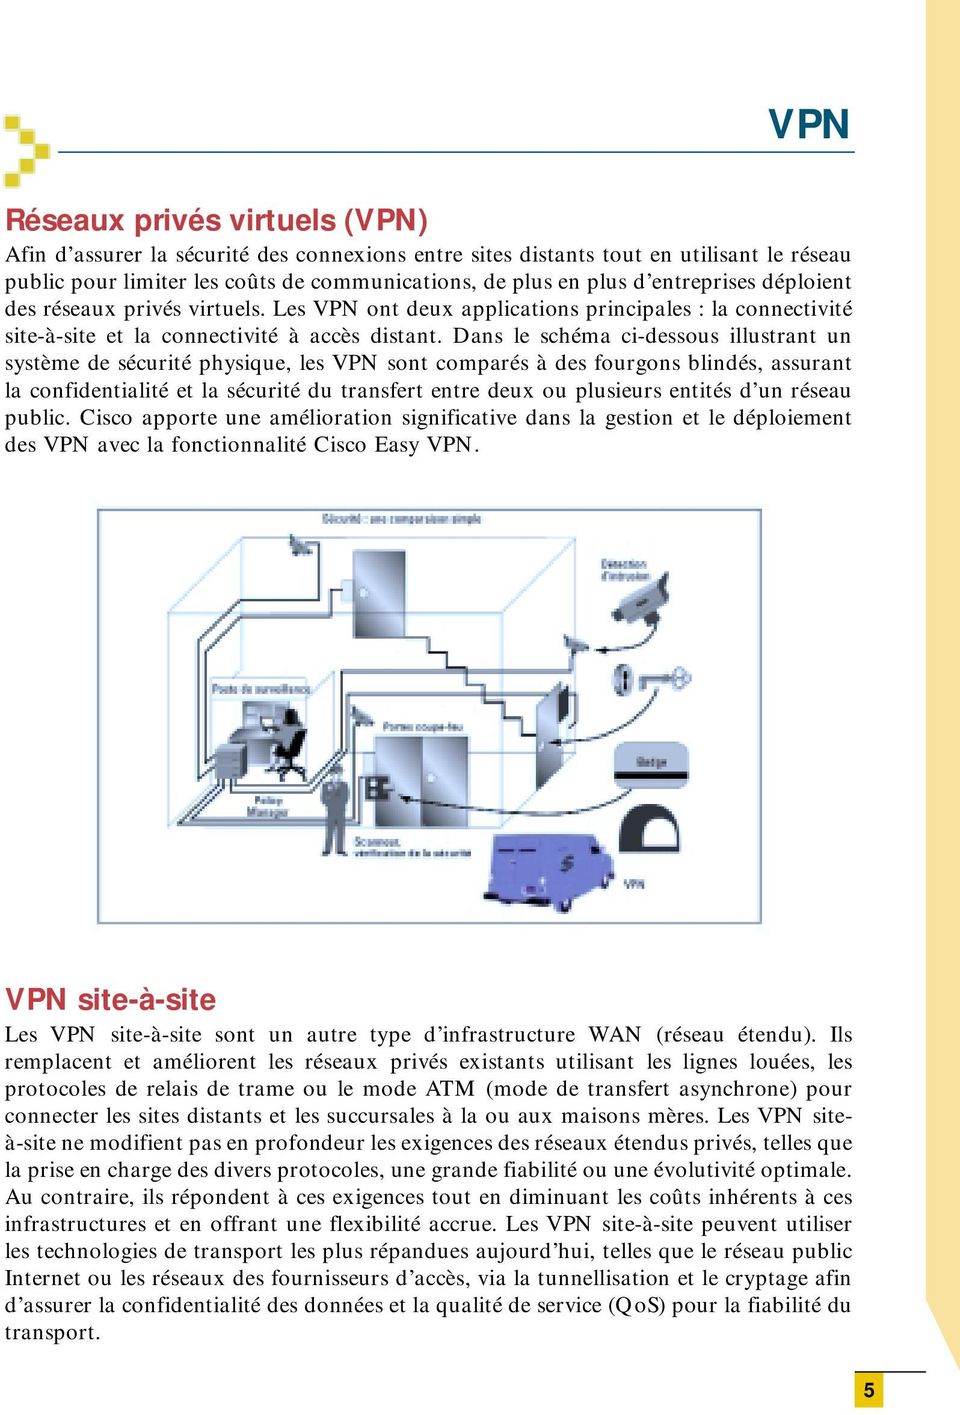 Dans le schéma ci-dessous illustrant un système de sécurité physique, les VPN sont comparés à des fourgons blindés, assurant la confidentialité et la sécurité du transfert entre deux ou plusieurs